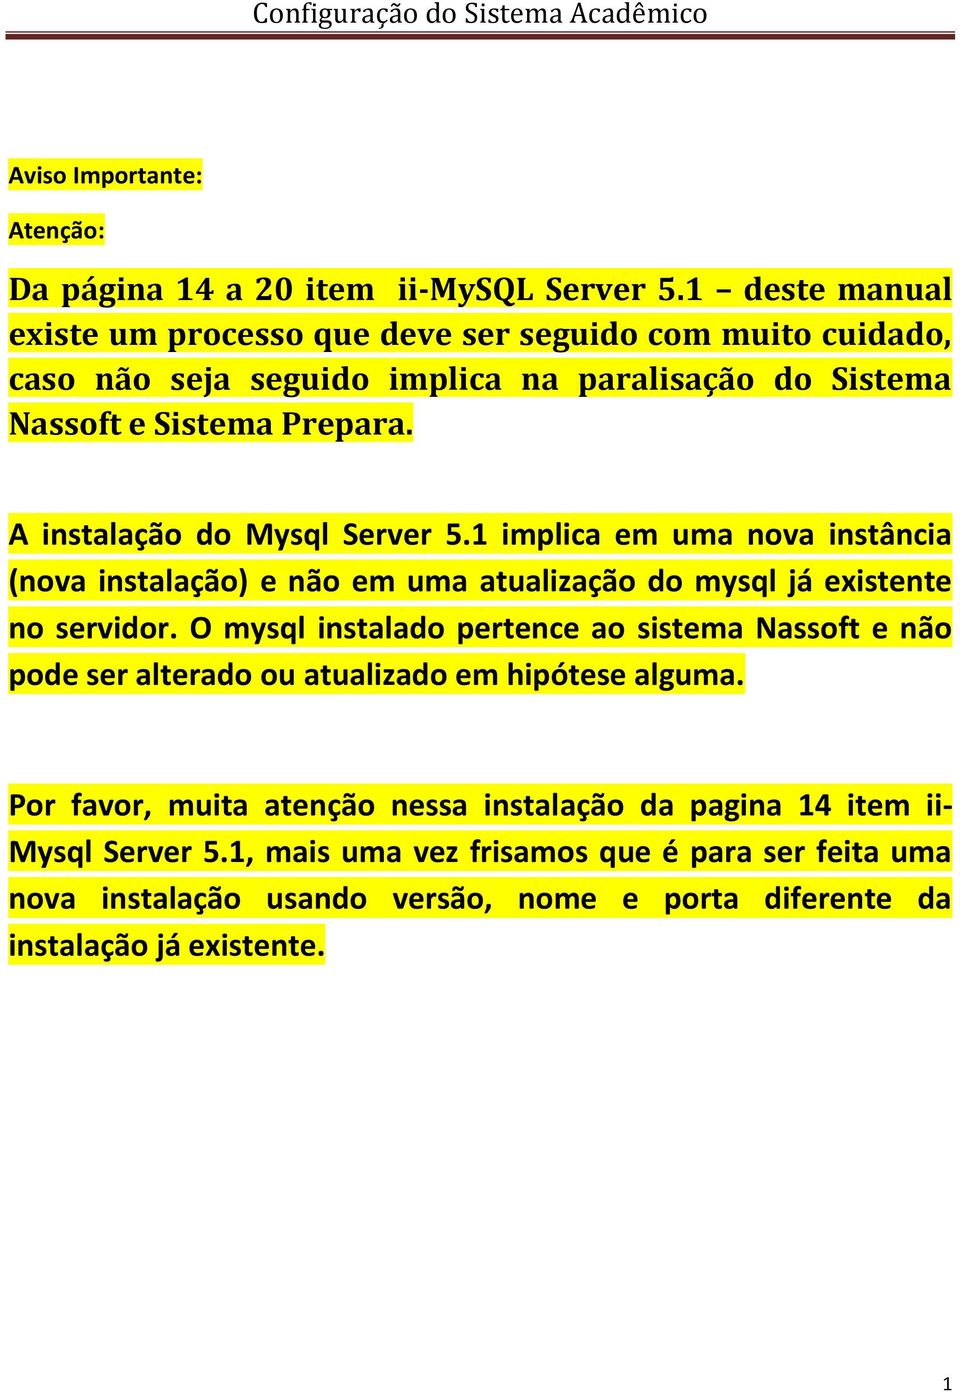 A instalação do Mysql Server 5.1 implica em uma nova instância (nova instalação) e não em uma atualização do mysql já existente no servidor.